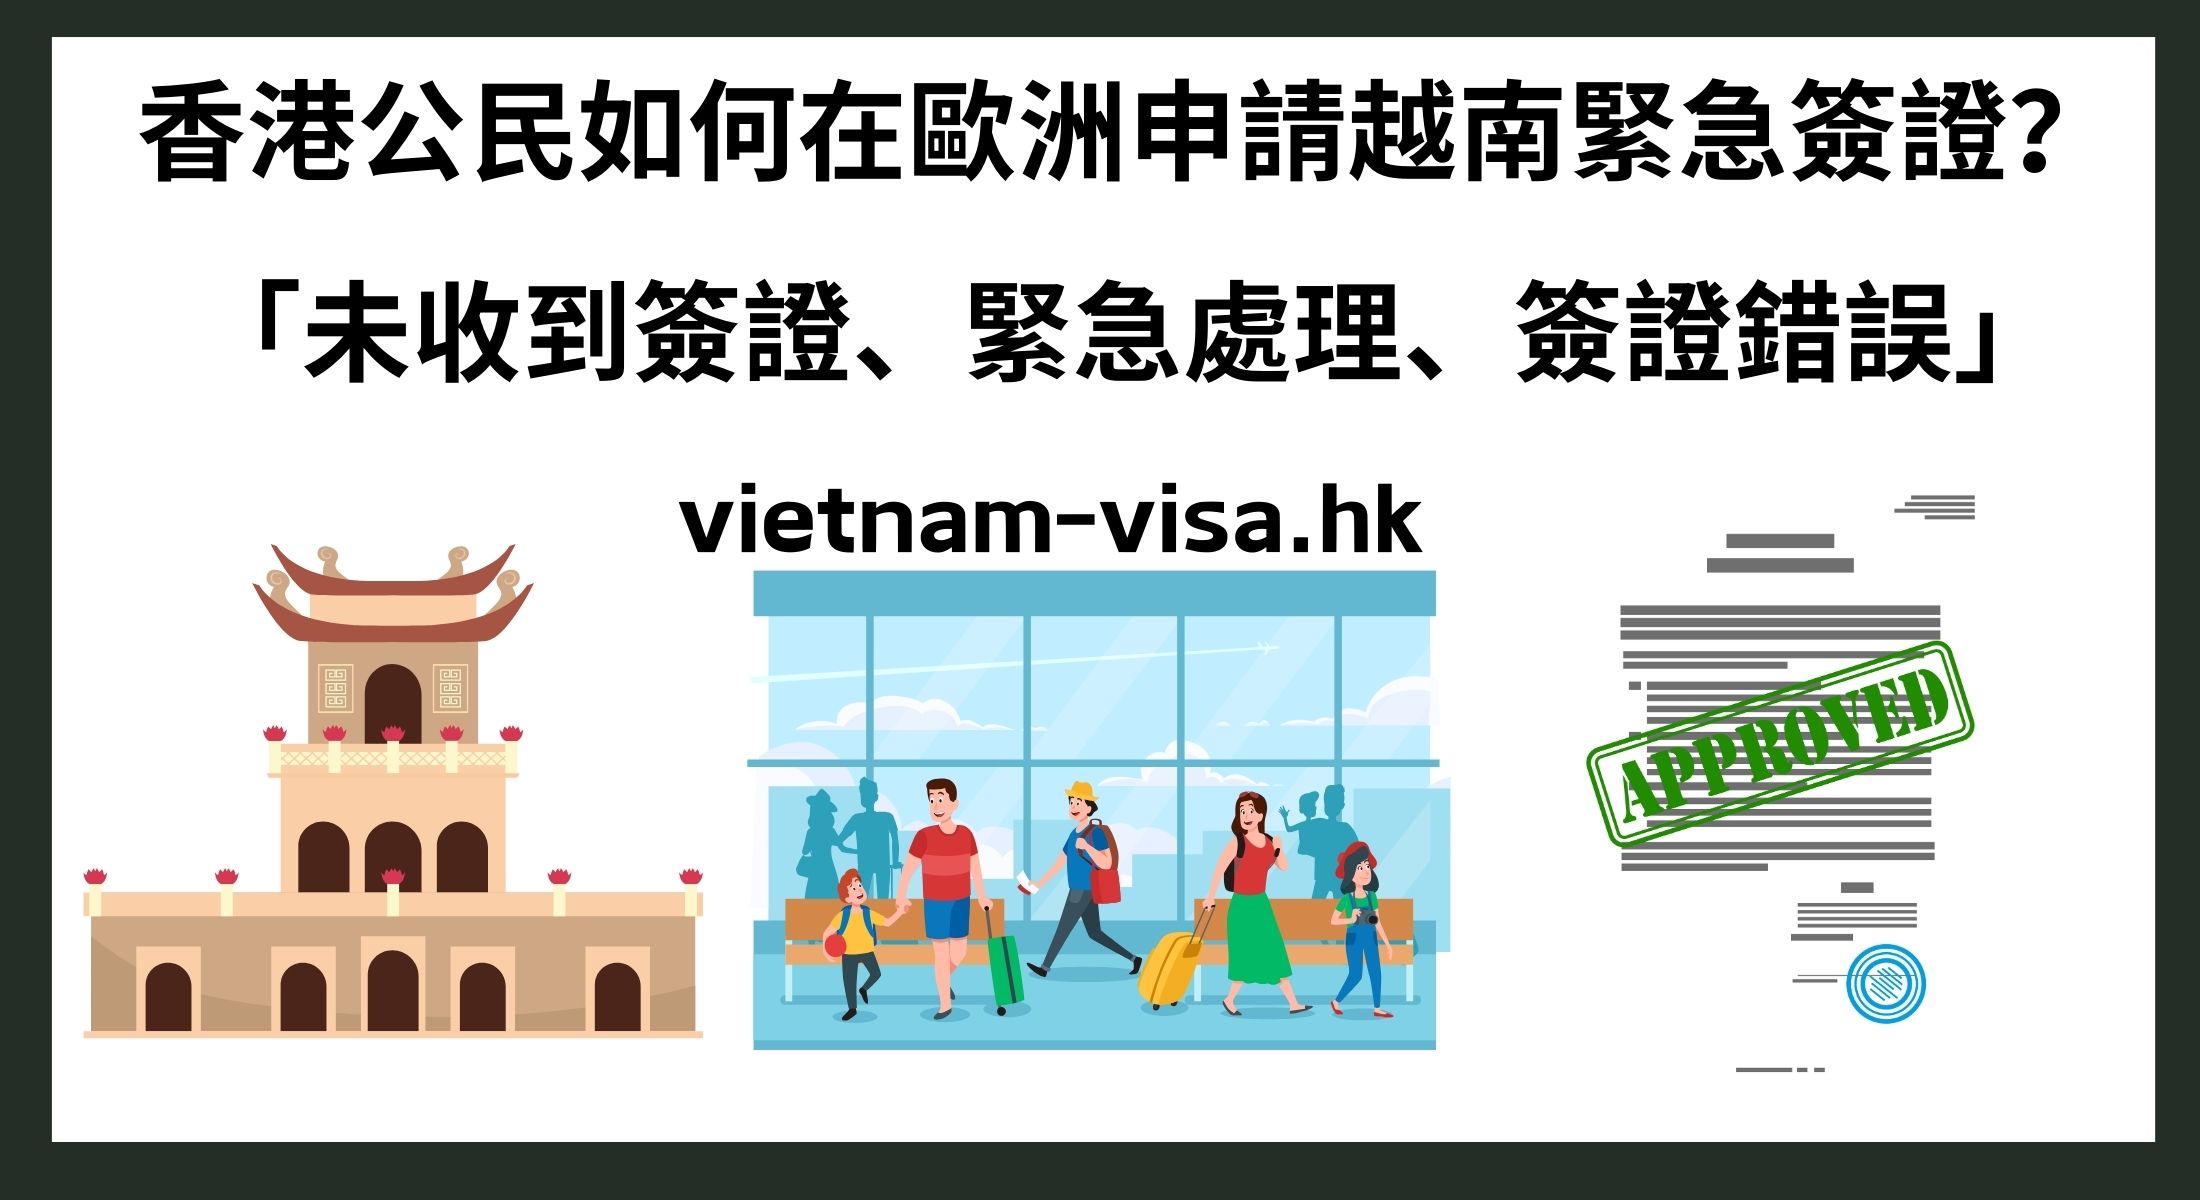 香港公民如何在歐洲申請越南緊急簽證？ 「未收到簽證、緊急處理、簽證錯誤」